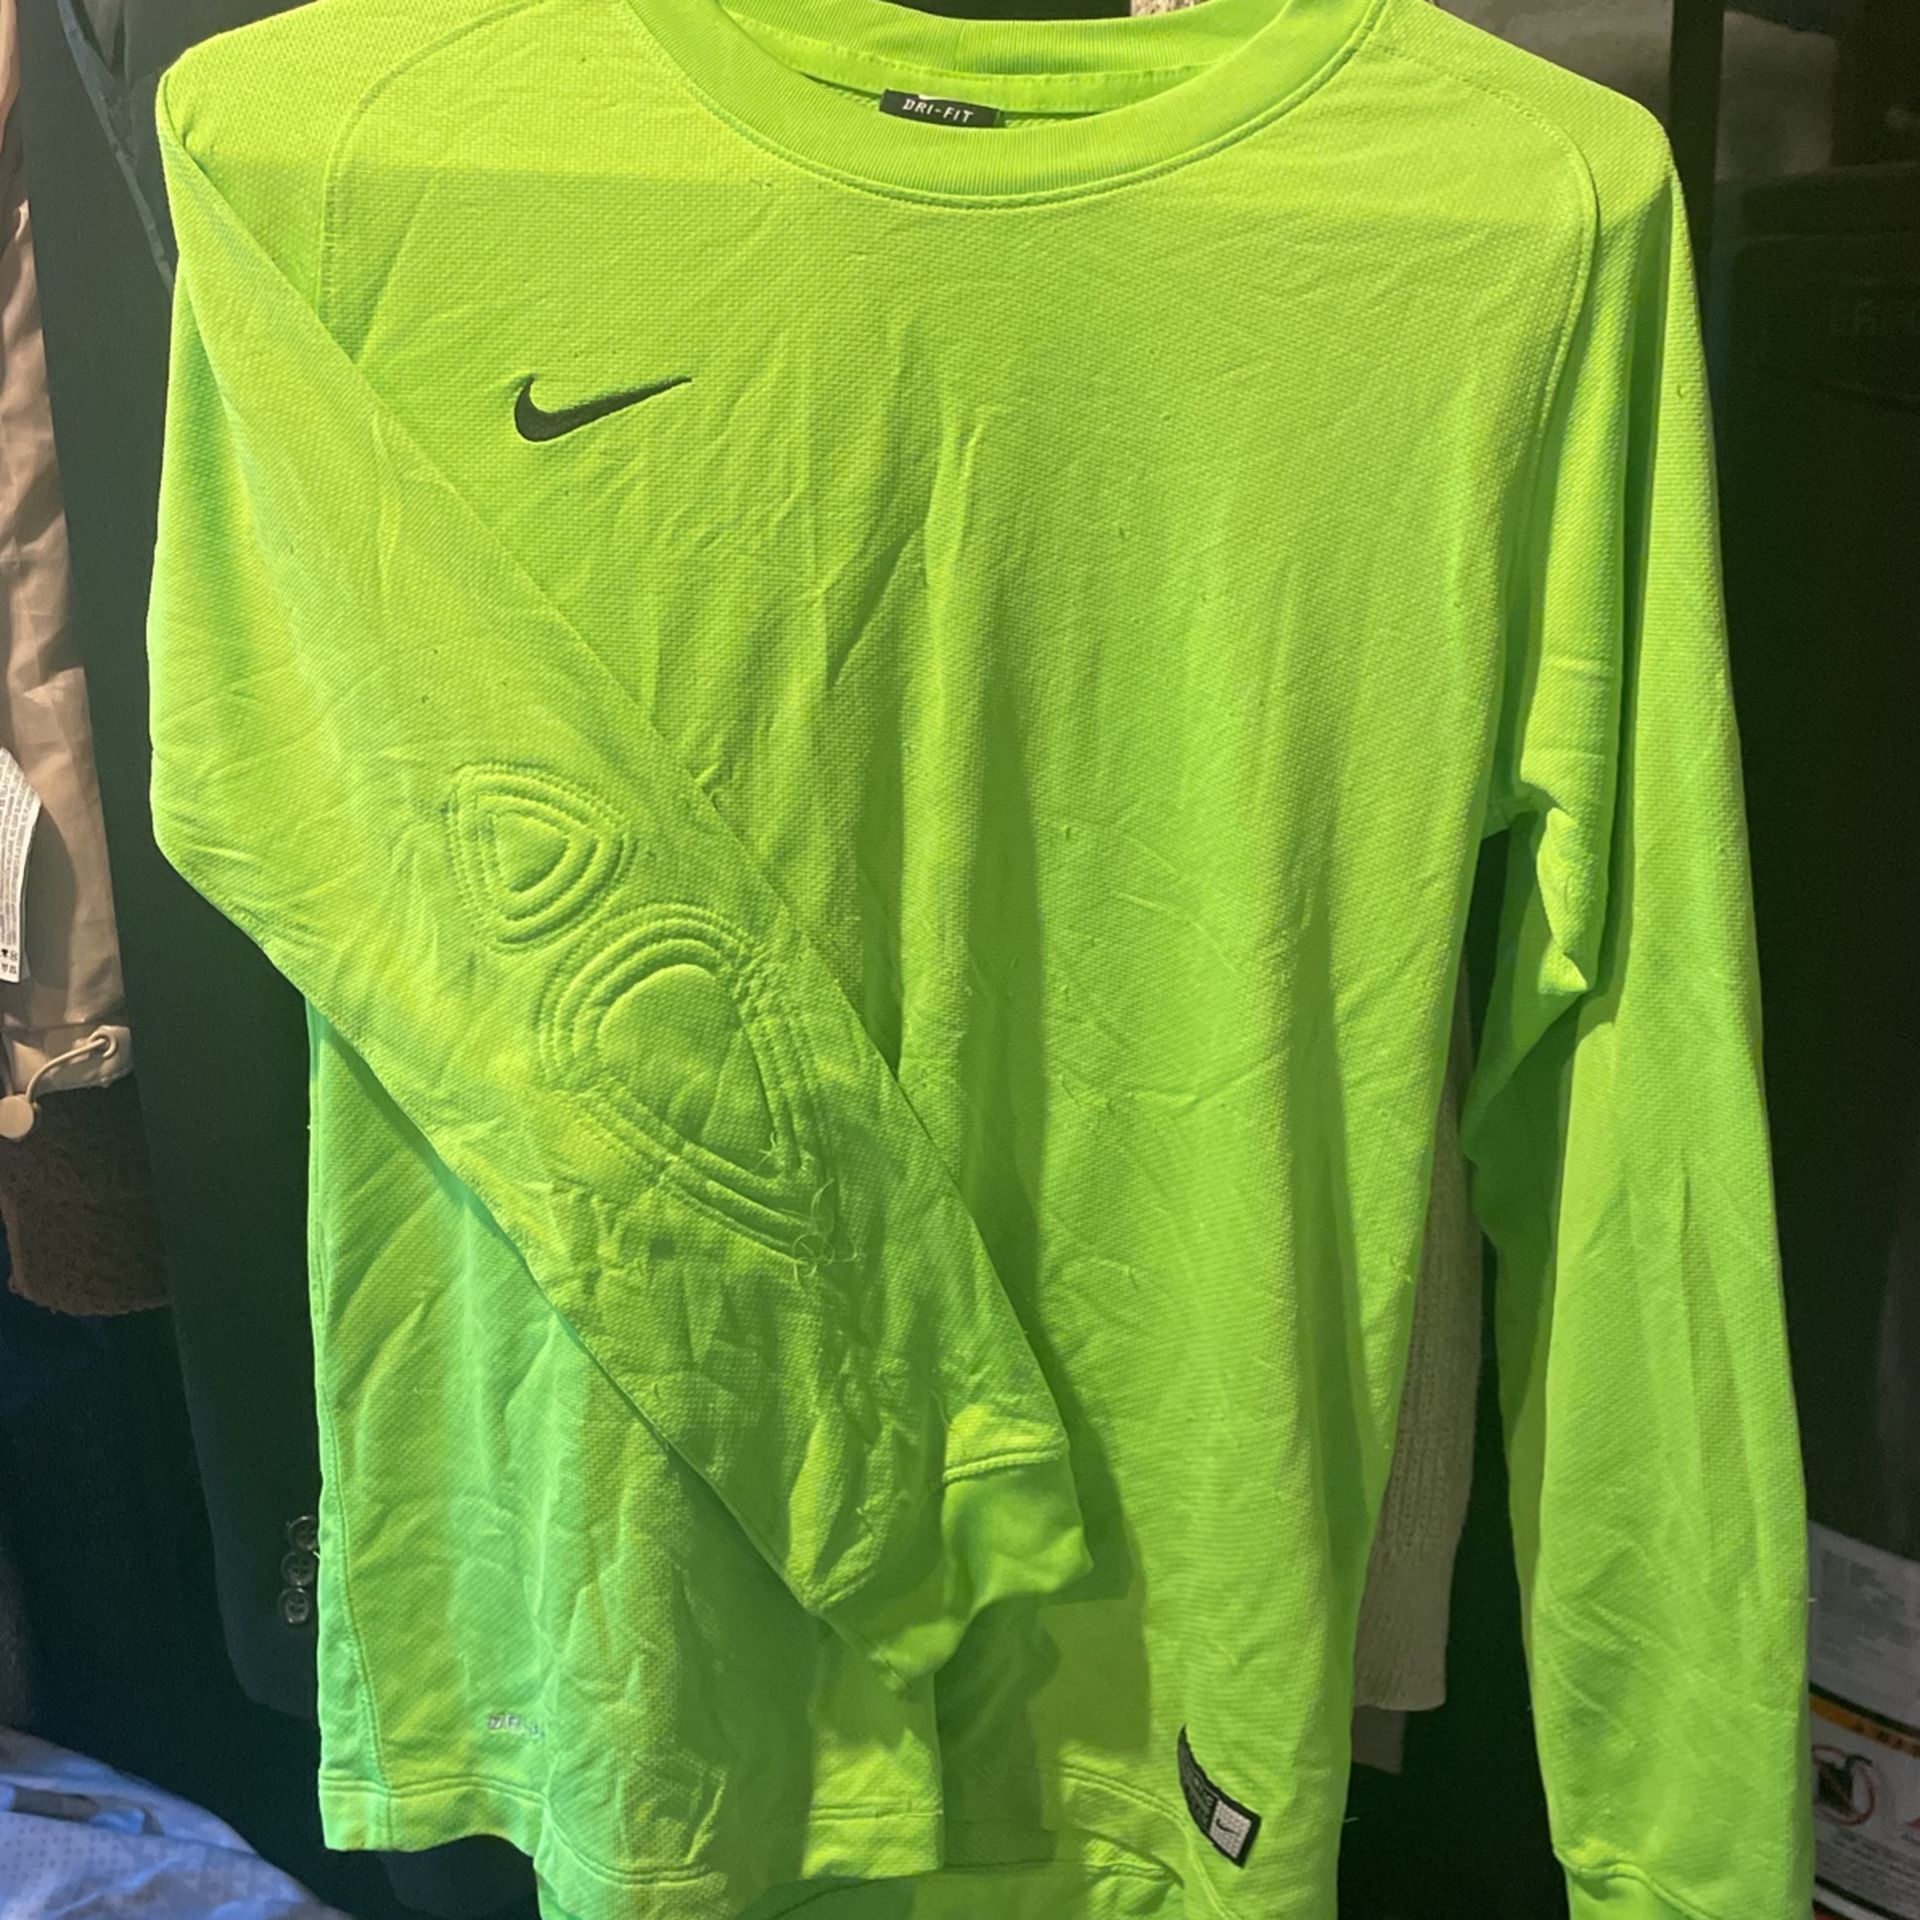 Soccer goalie Nike Shirt $5